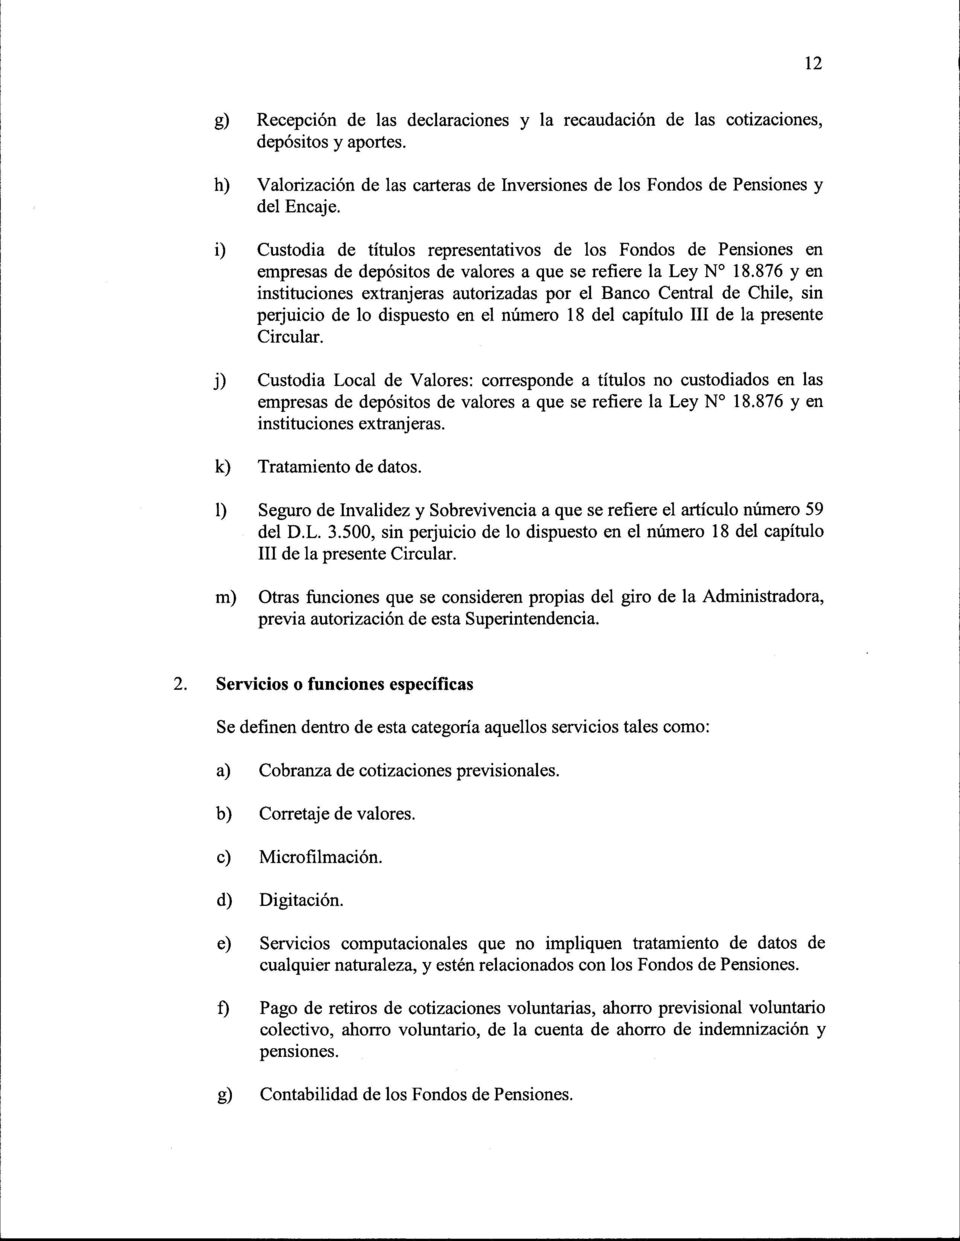 876 y en instituciones extranjeras autorizadas por el Banco Central de Chile, sin perjuicio de lo dispuesto en el número 18 del capítulo III de la presente Circular.